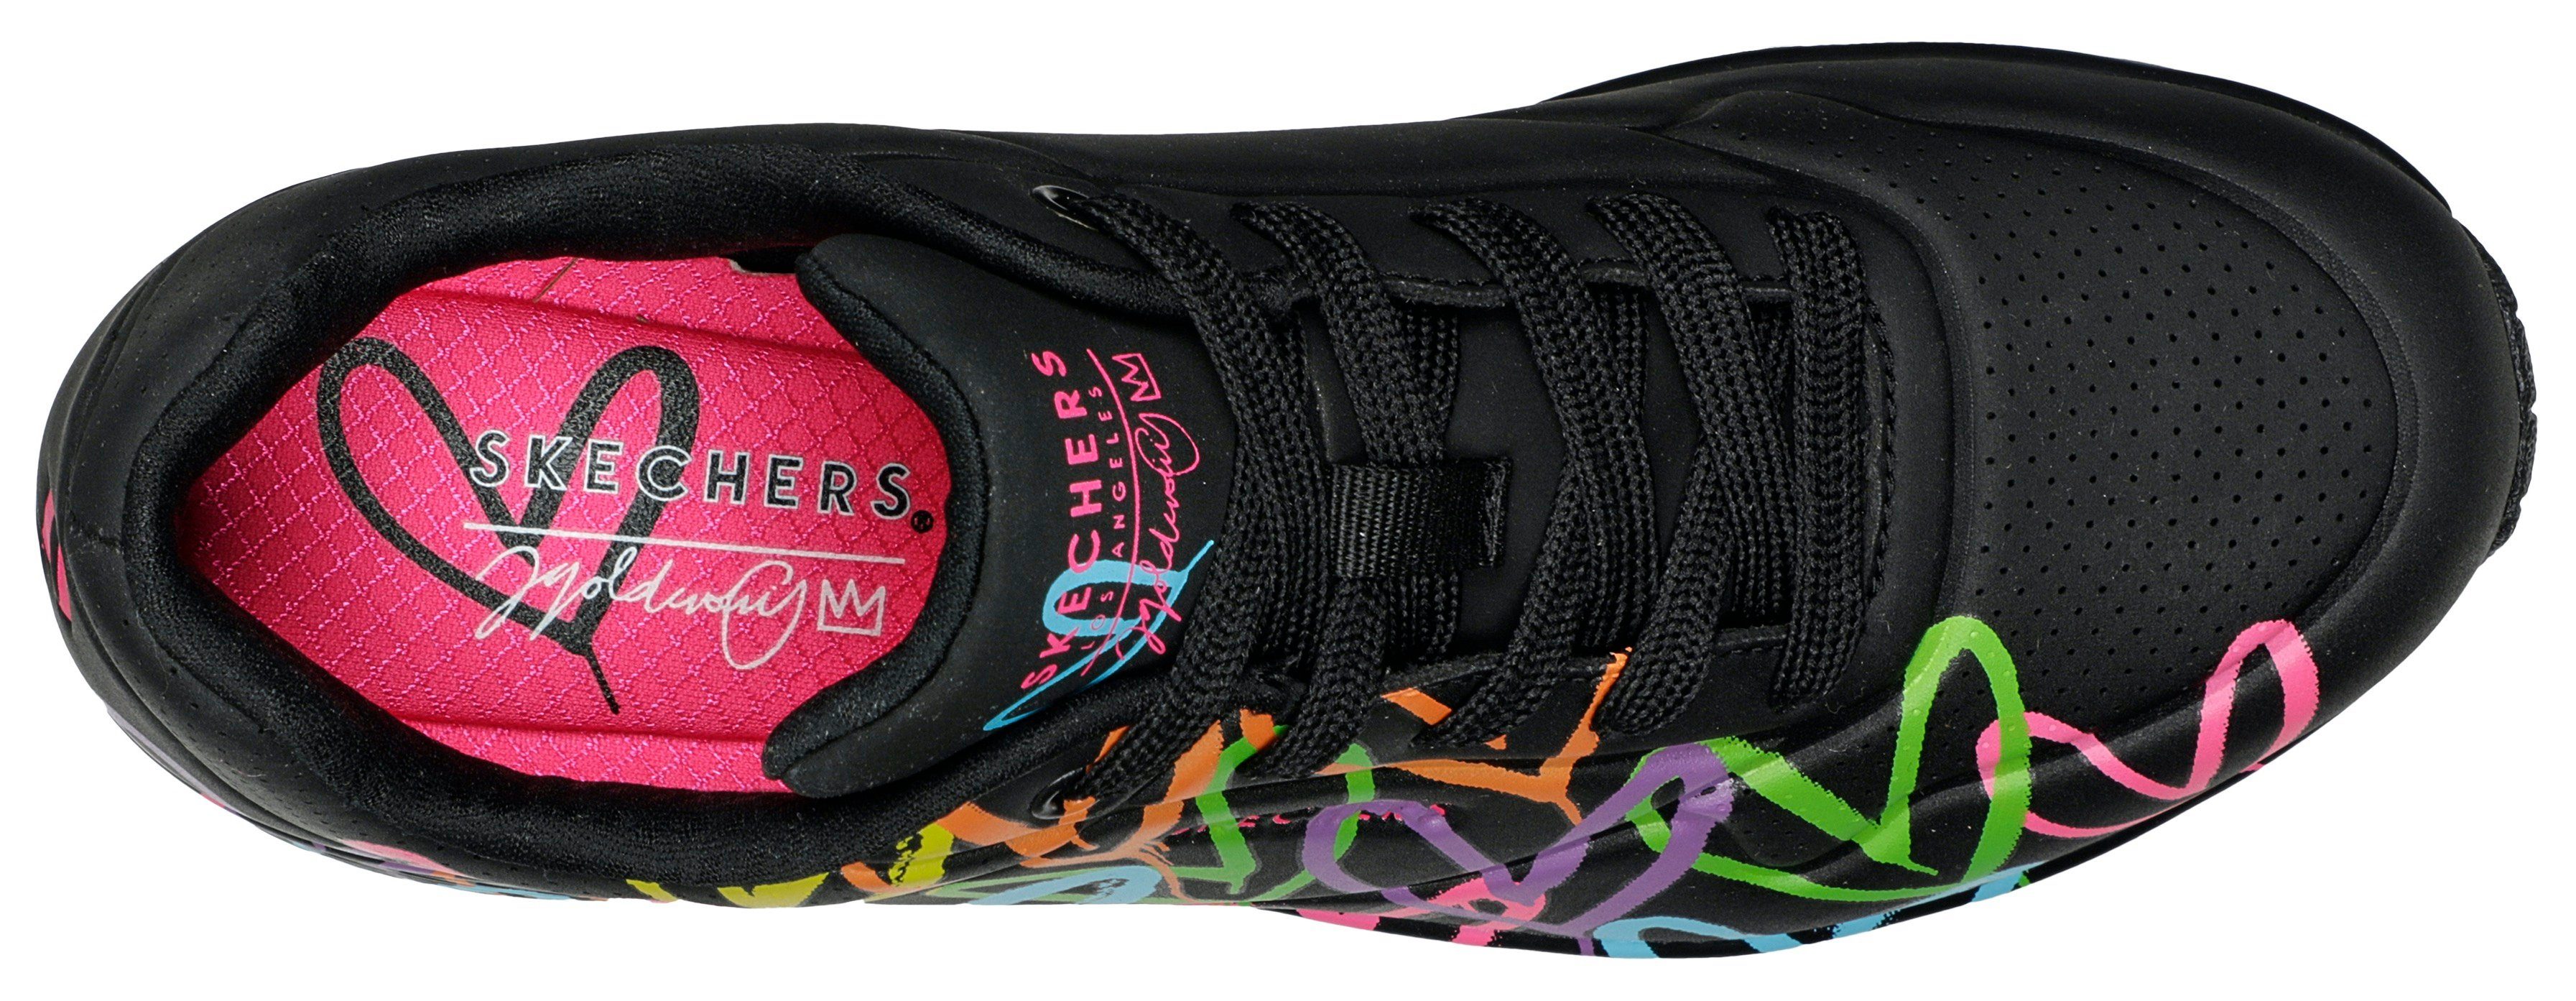 Skechers UNO schwarz-multi farbenfrohen mit LOVE HIGHLIGHT Sneaker - Herzchen-Print